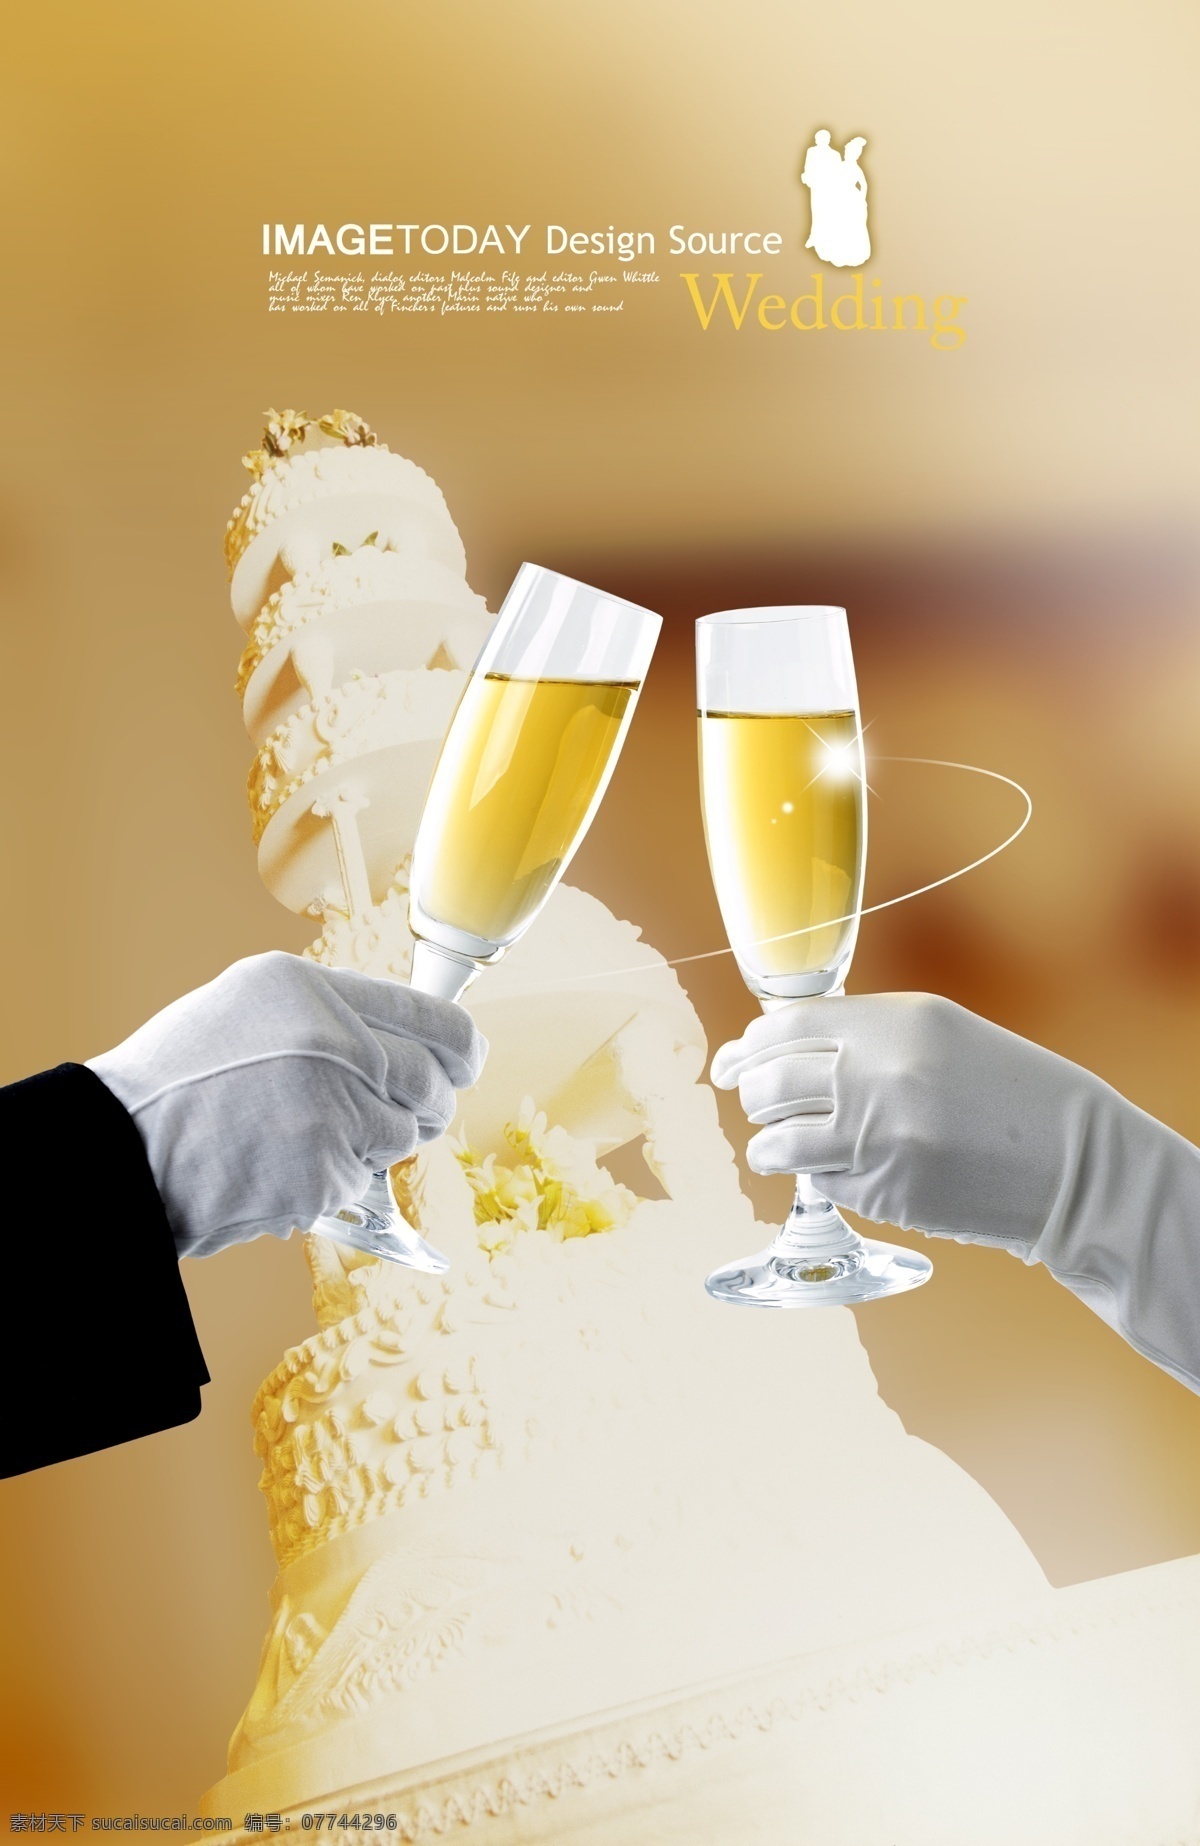 浪漫婚礼 场景 海报 浪漫 婚礼 蛋糕 梦幻 酒杯 广告设计模板 源文件